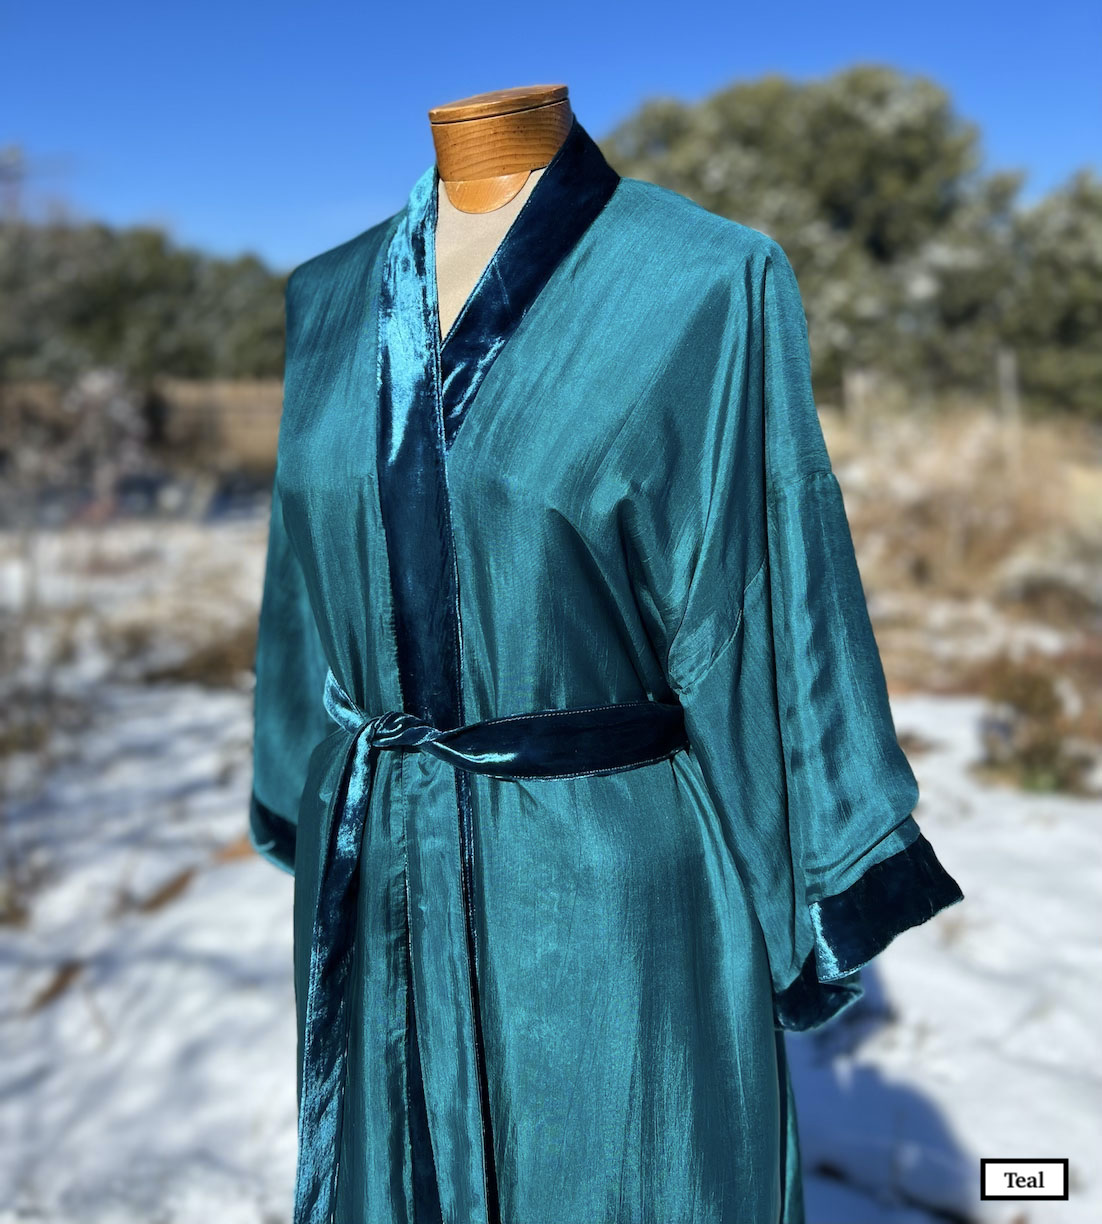 Reversible silk/velvet robes handmade in Vietnam